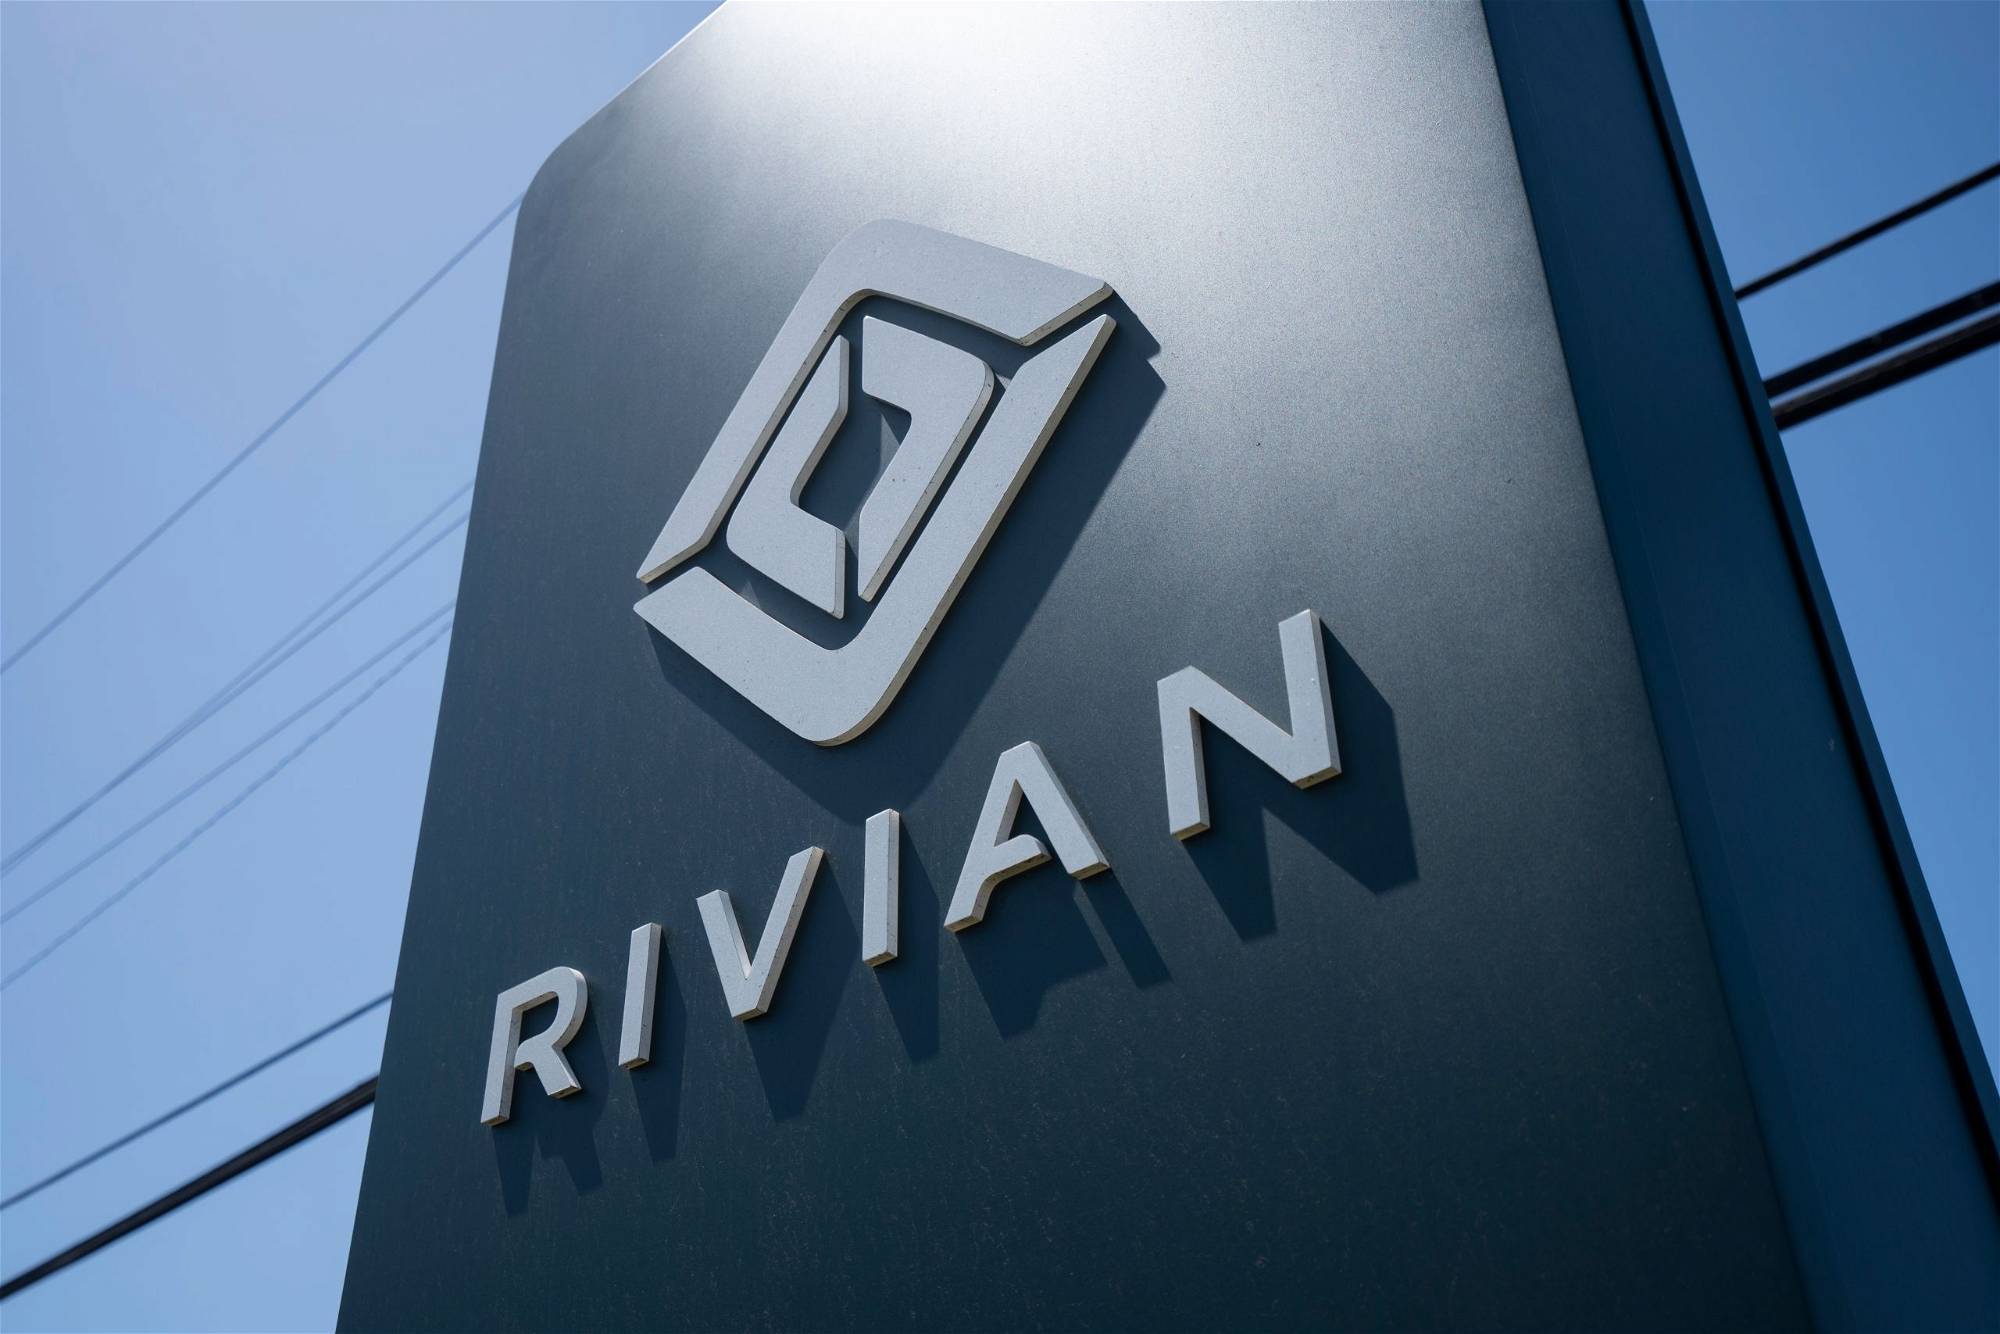 Rivian Automotive-Aktie: Sollten Sie jetzt kaufen?